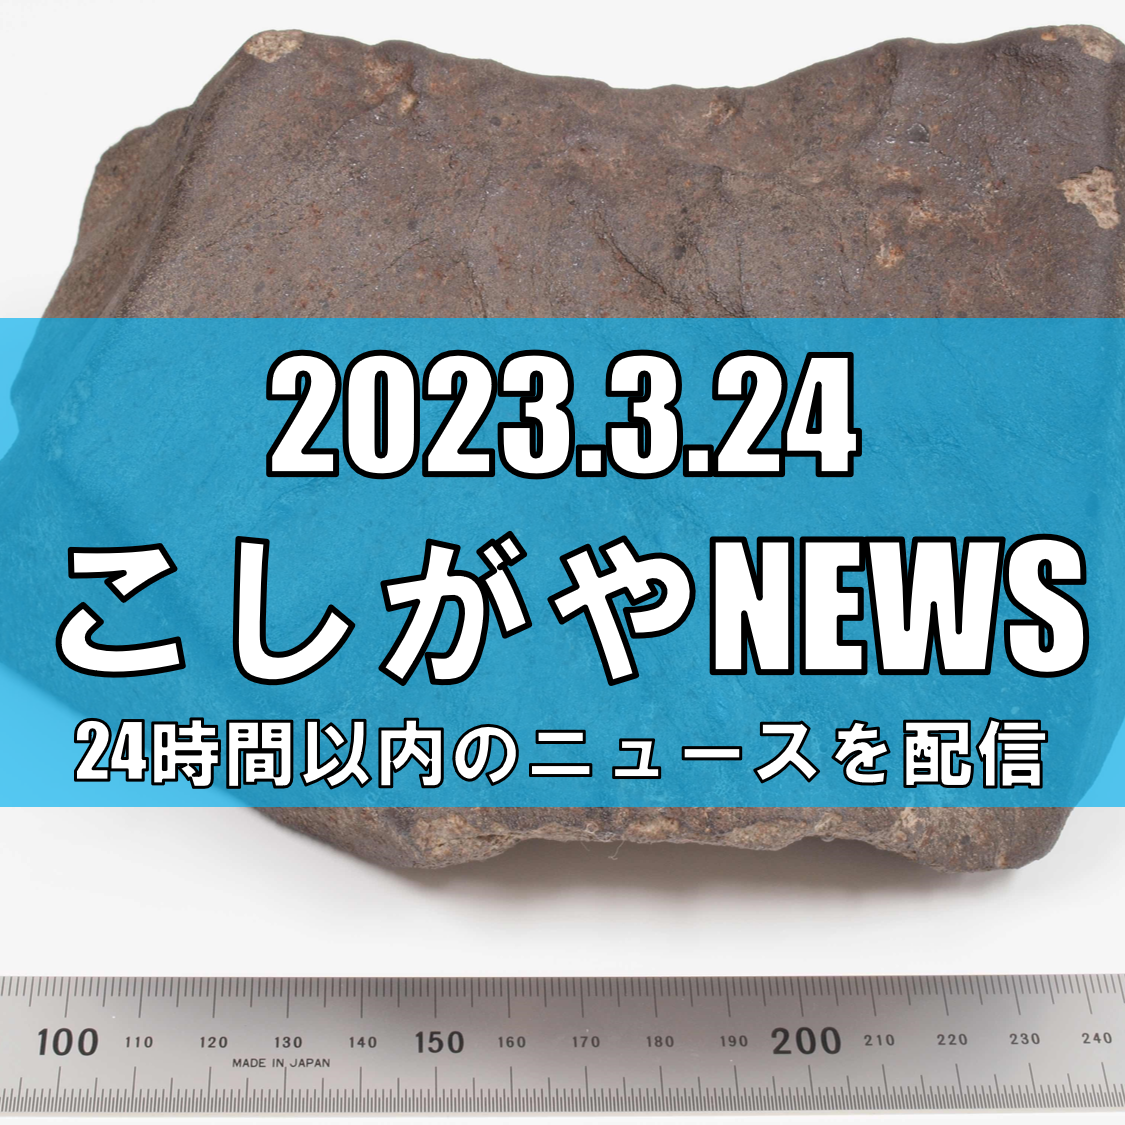 【国立科学博物館】100年以上前に埼玉県越谷市に落下した隕石の分類を確定。「越谷隕石」として国際隕石学会に登録されました。【がやてっく越谷最新ニュース】